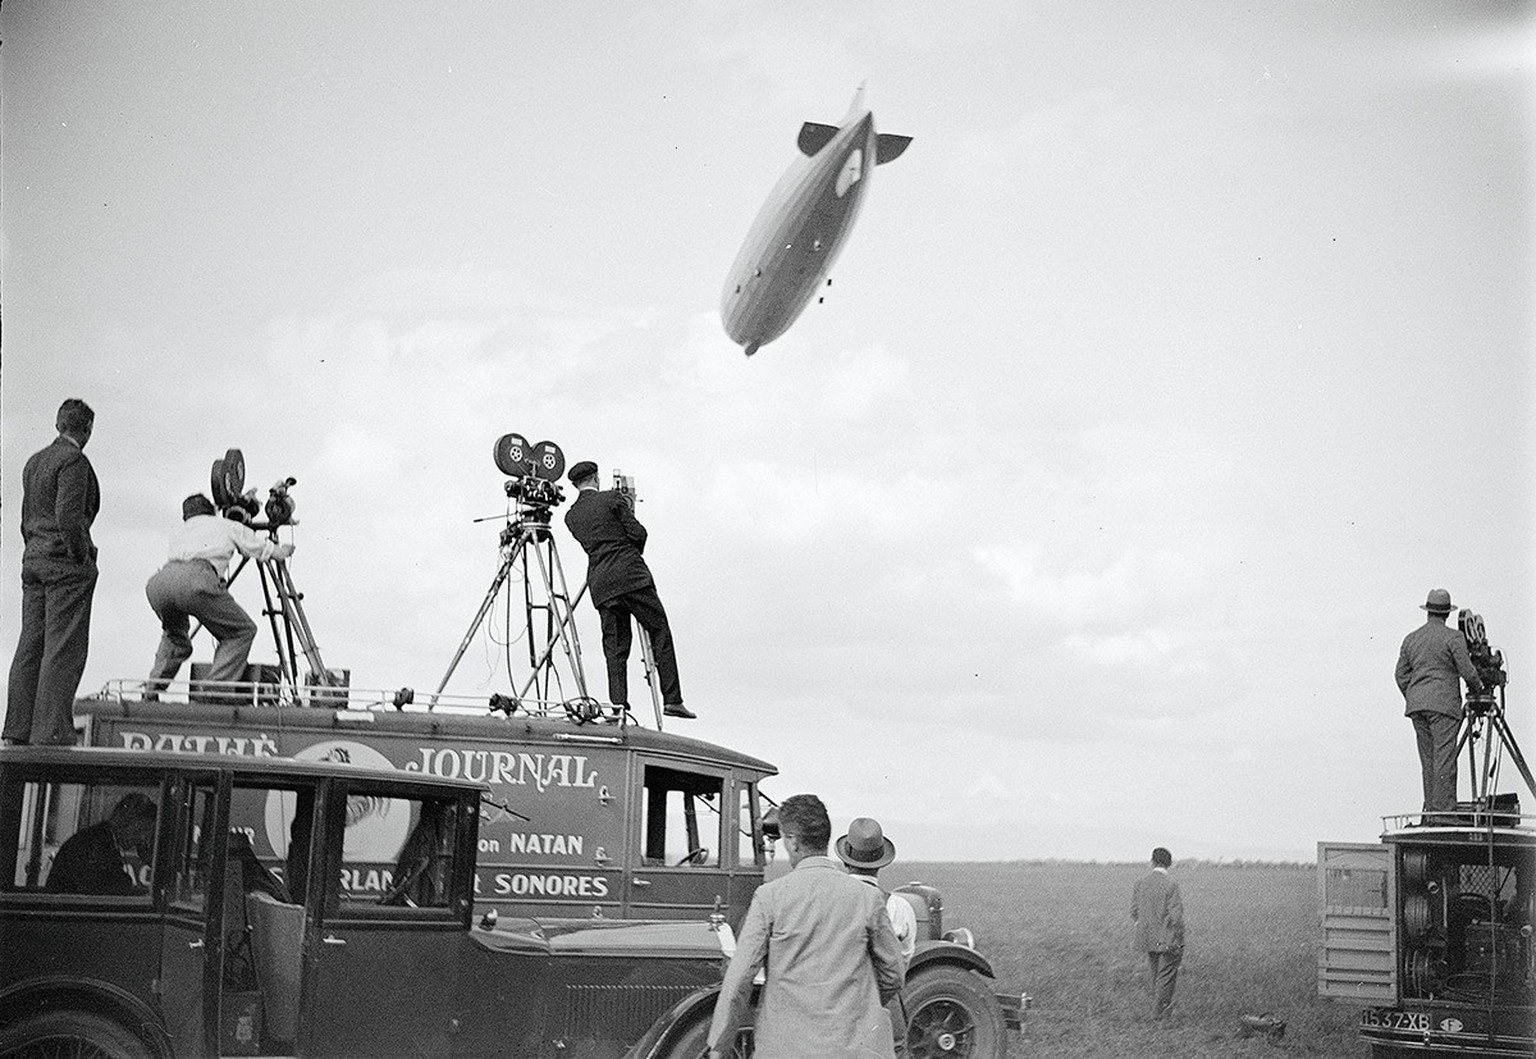 Atterrissage du Zeppelin «LZ 127» transportant des participants allemands à une réunion de la Société des Nations à Genève Cointrin, le 14 septembre 1930.
https://permalink.nationalmuseum.ch/100440129